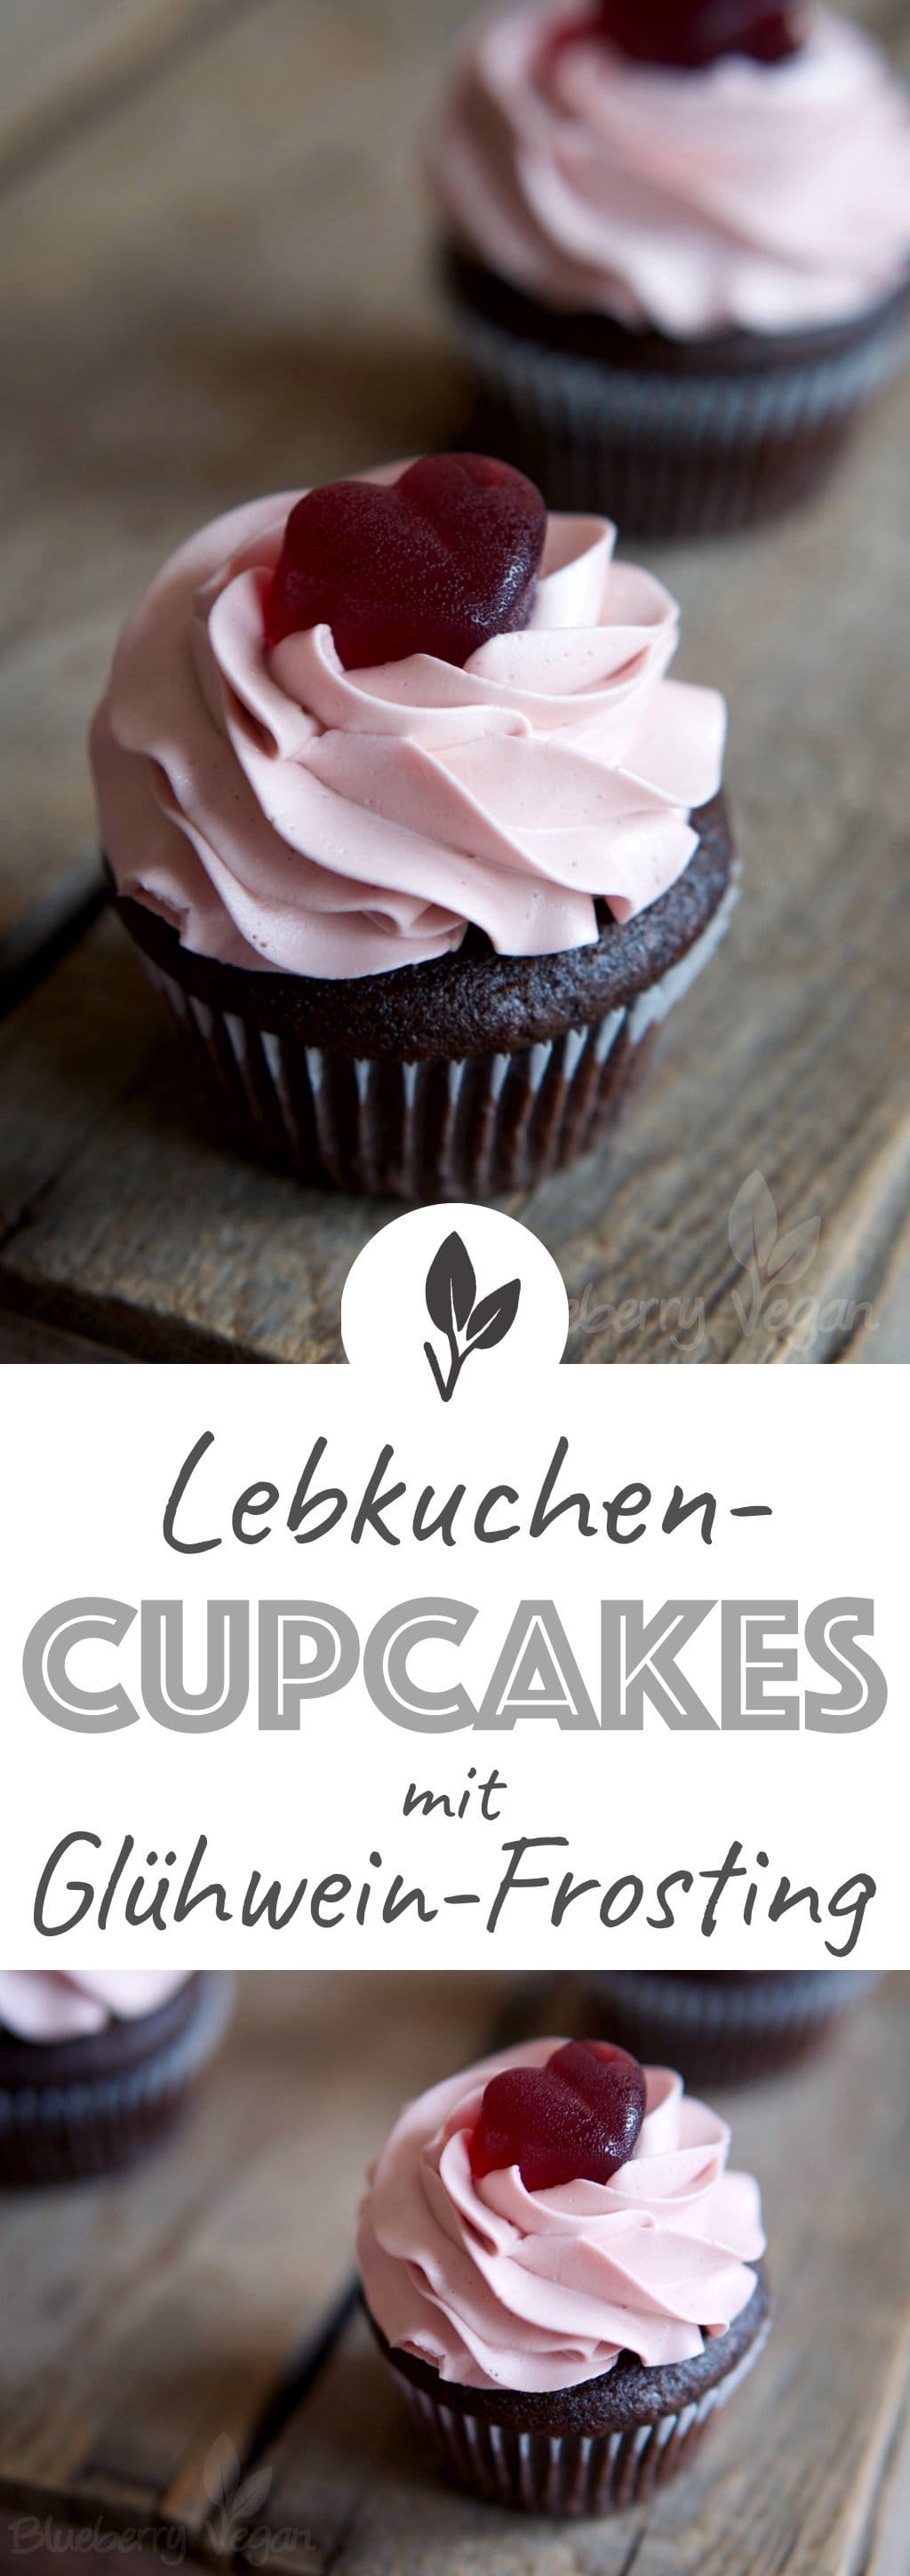 Gefüllte Lebkuchen-Cupcakes mit Glühwein-Frosting | Blueberry Vegan